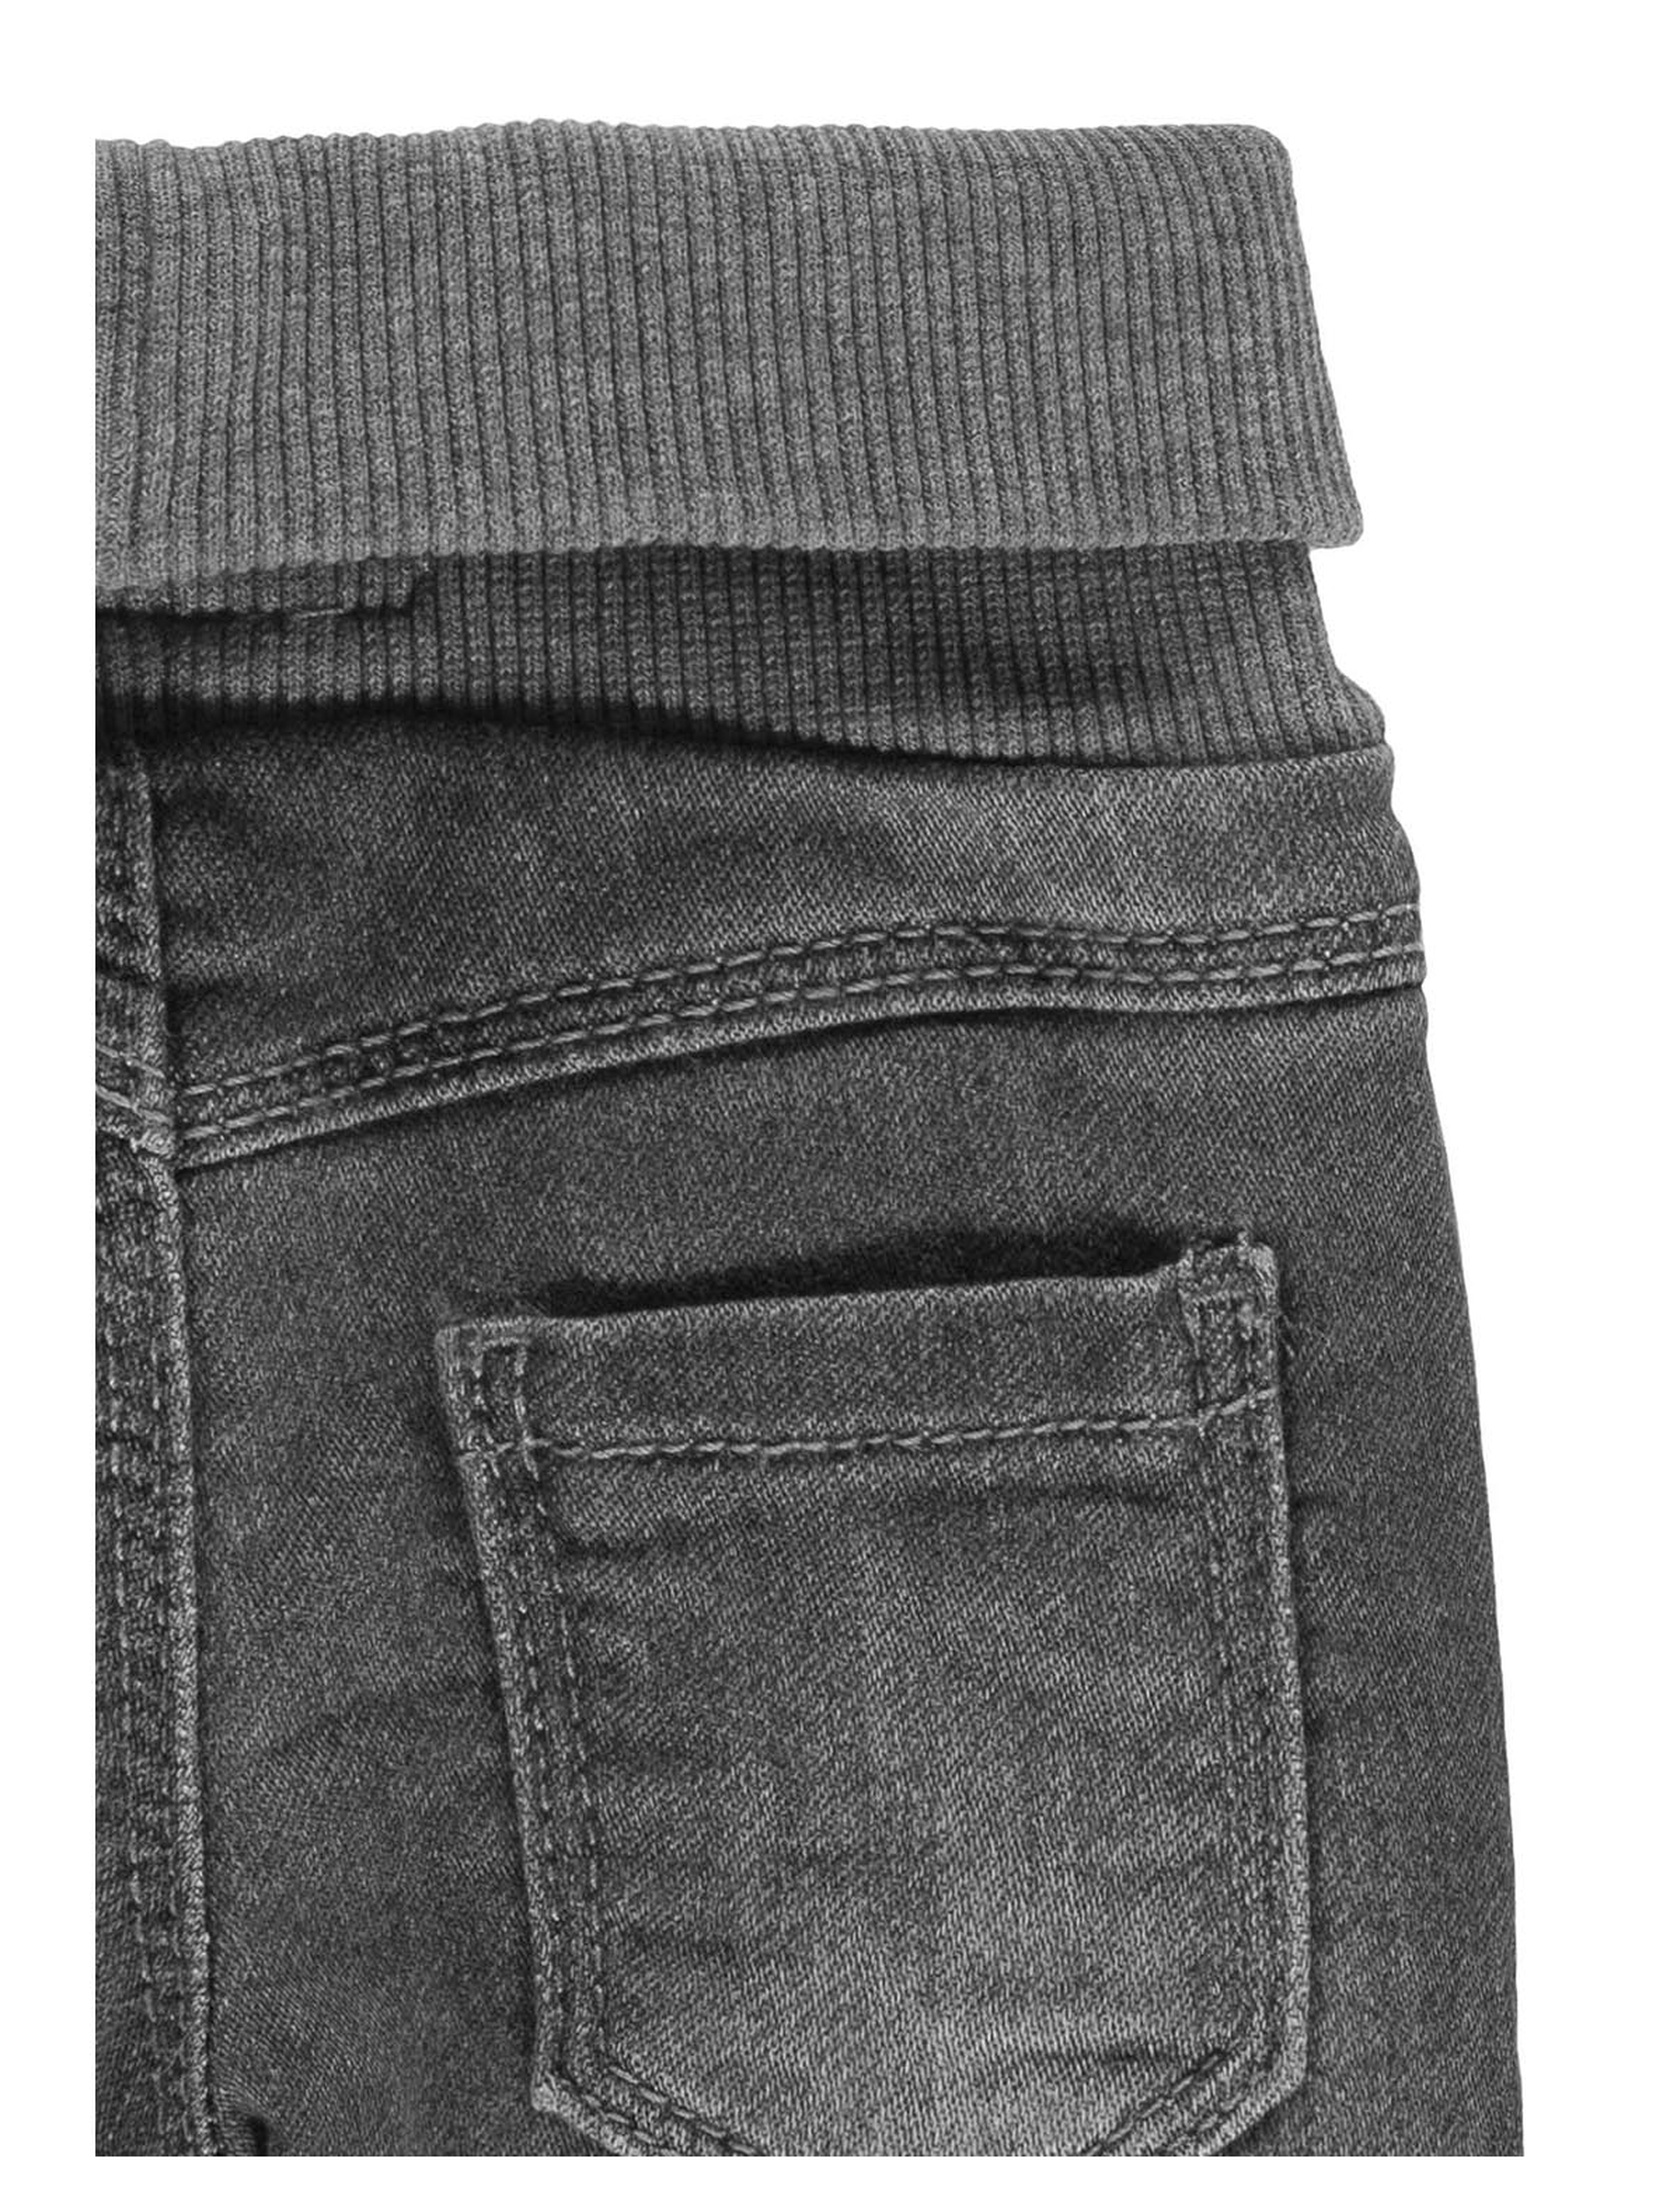 Spodnie jeansowe niemowlęce, szare, bellybutton